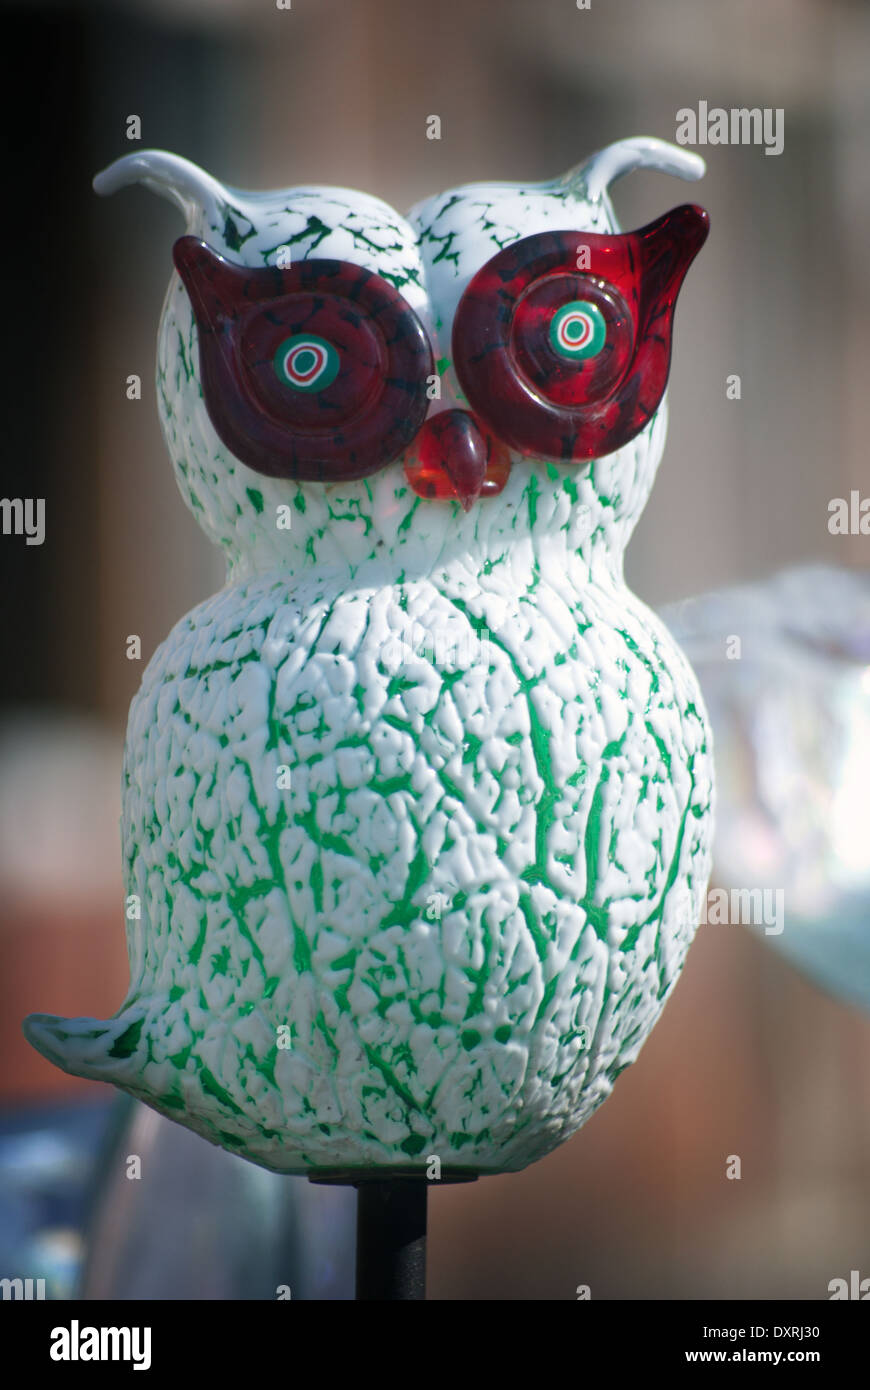 Eule Vogel Skulptur Handarbeit aus Murano-Glas in Venedig Stockfotografie -  Alamy